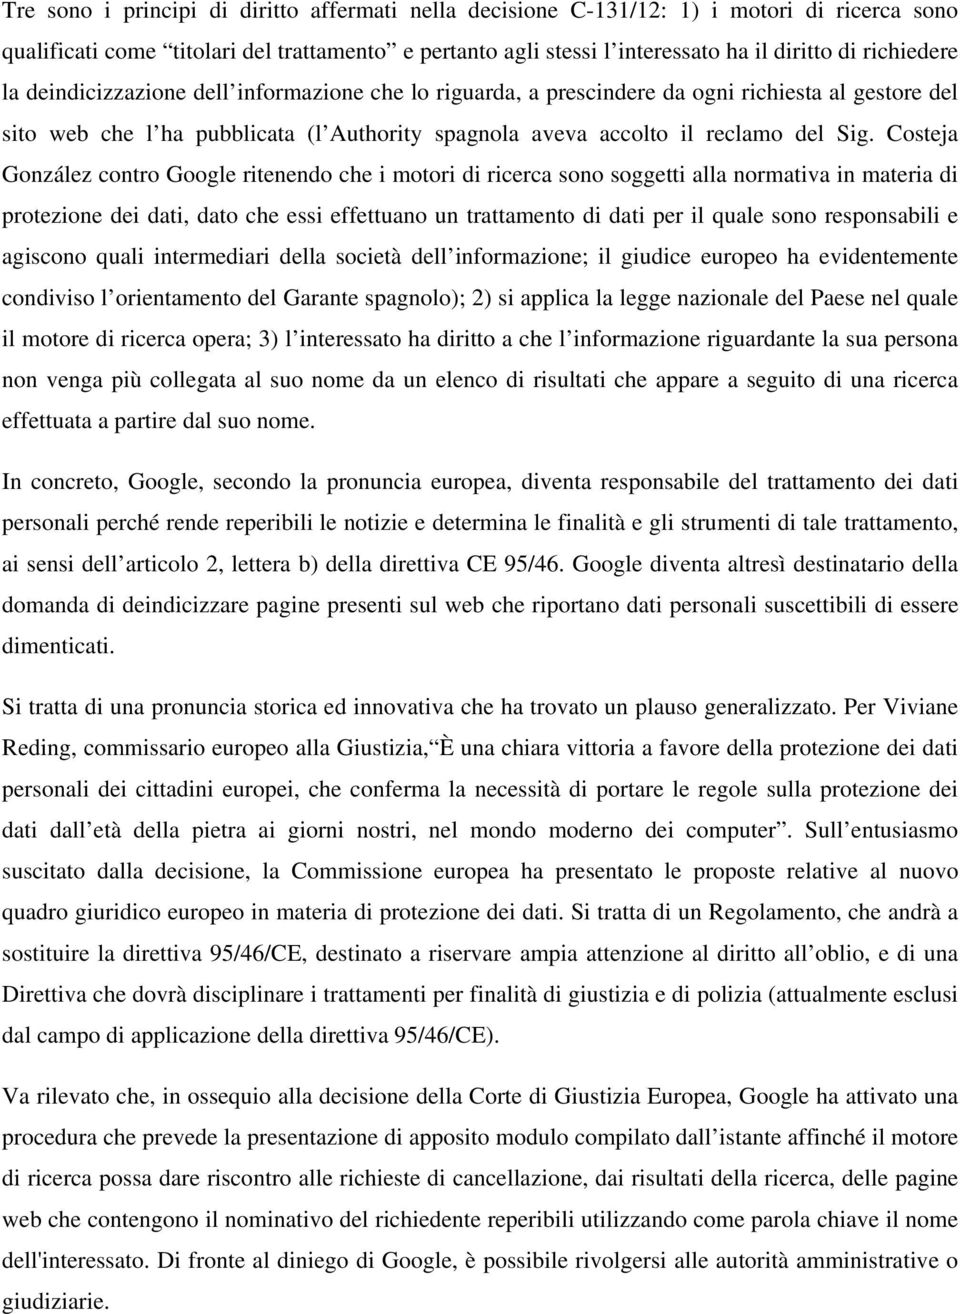 Costeja González contro Google ritenendo che i motori di ricerca sono soggetti alla normativa in materia di protezione dei dati, dato che essi effettuano un trattamento di dati per il quale sono